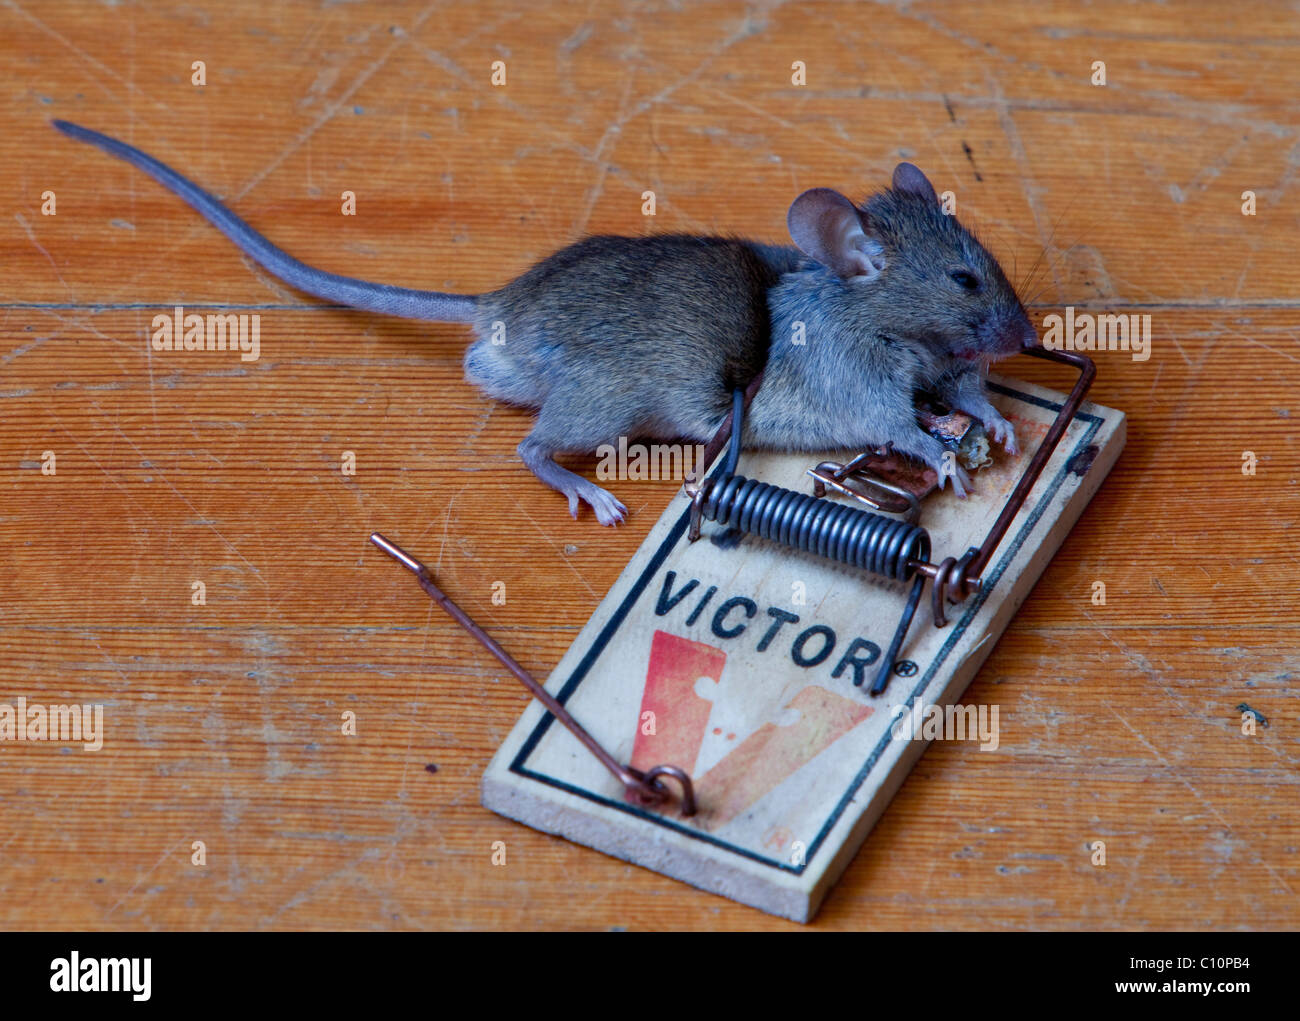 Casa común, ratón (Mus musculus) en la trampa, muertos, capturados Foto de stock